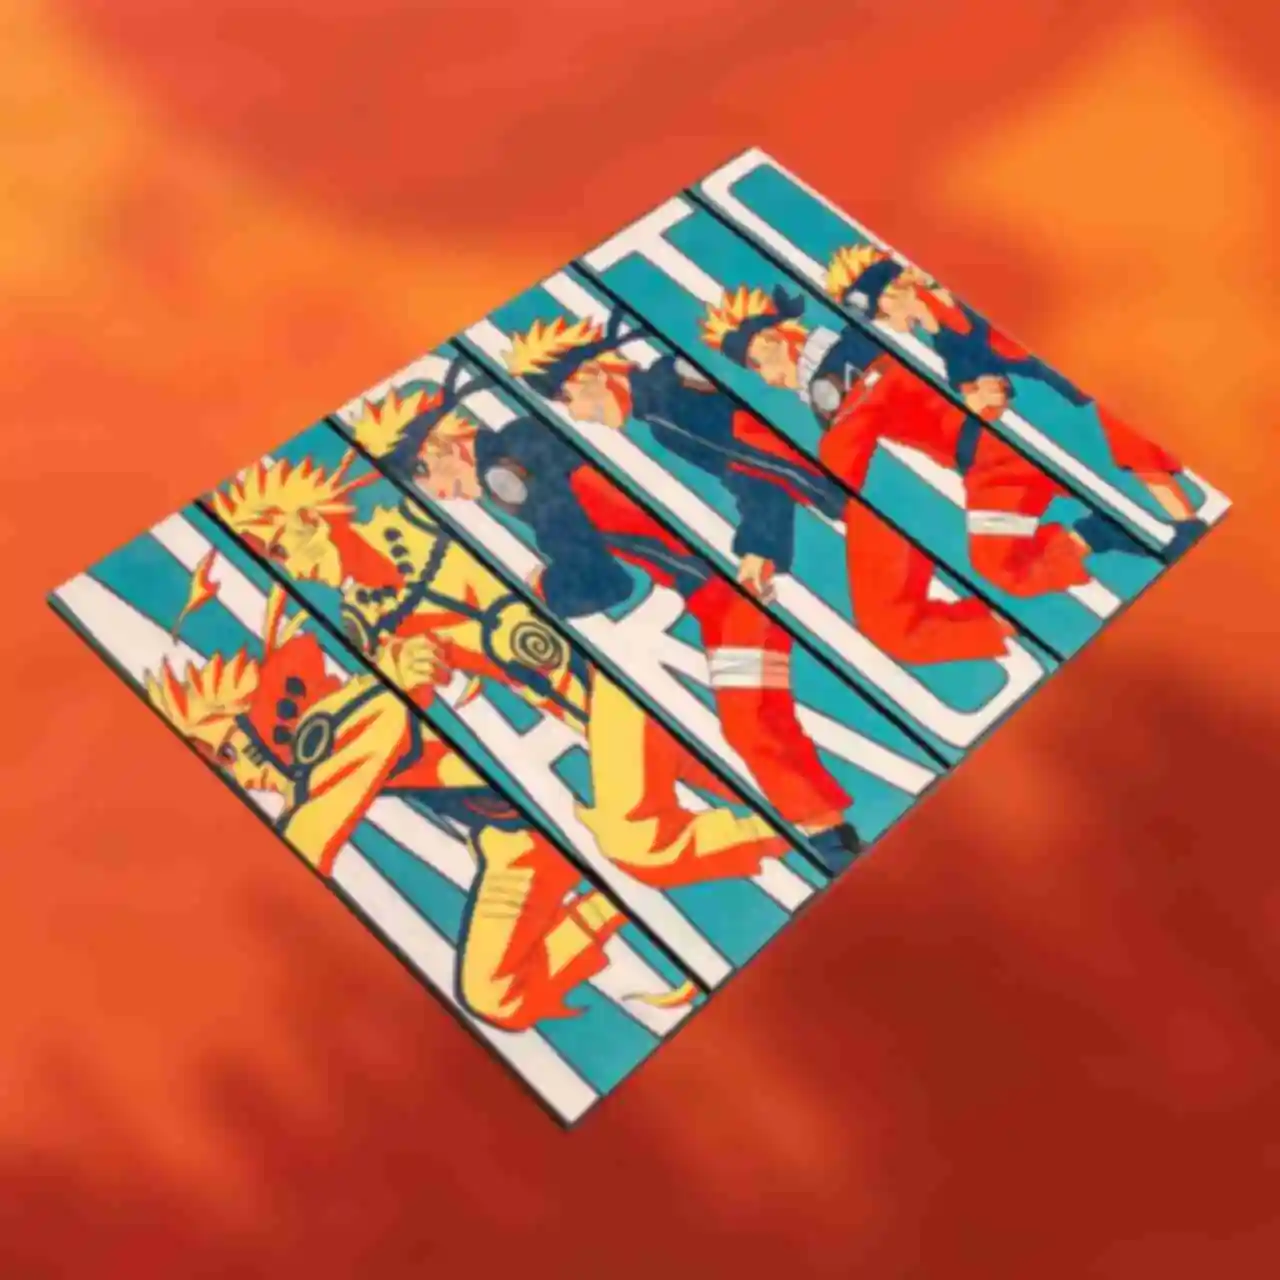 Деревянный постер №5 ⦁ Становление Наруто ⦁ Плакат ⦁ Подарки и сувениры в стиле аниме Naruto. Фото №82